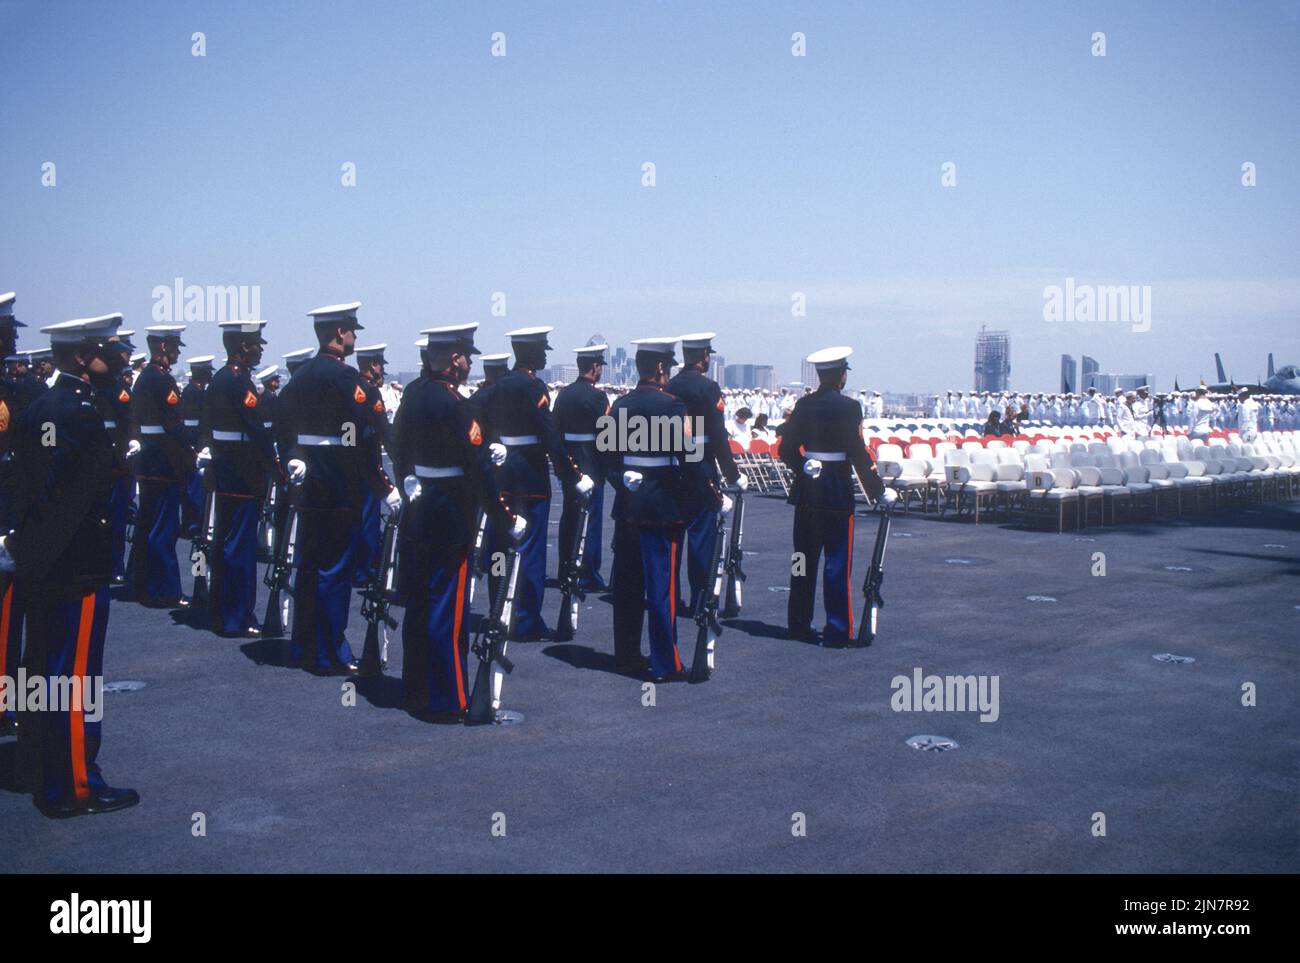 Guardia de honor del Cuerpo de Infantería de Marina de los Estados Unidos a bordo de un portaaviones de la Marina de los Estados Unidos Foto de stock